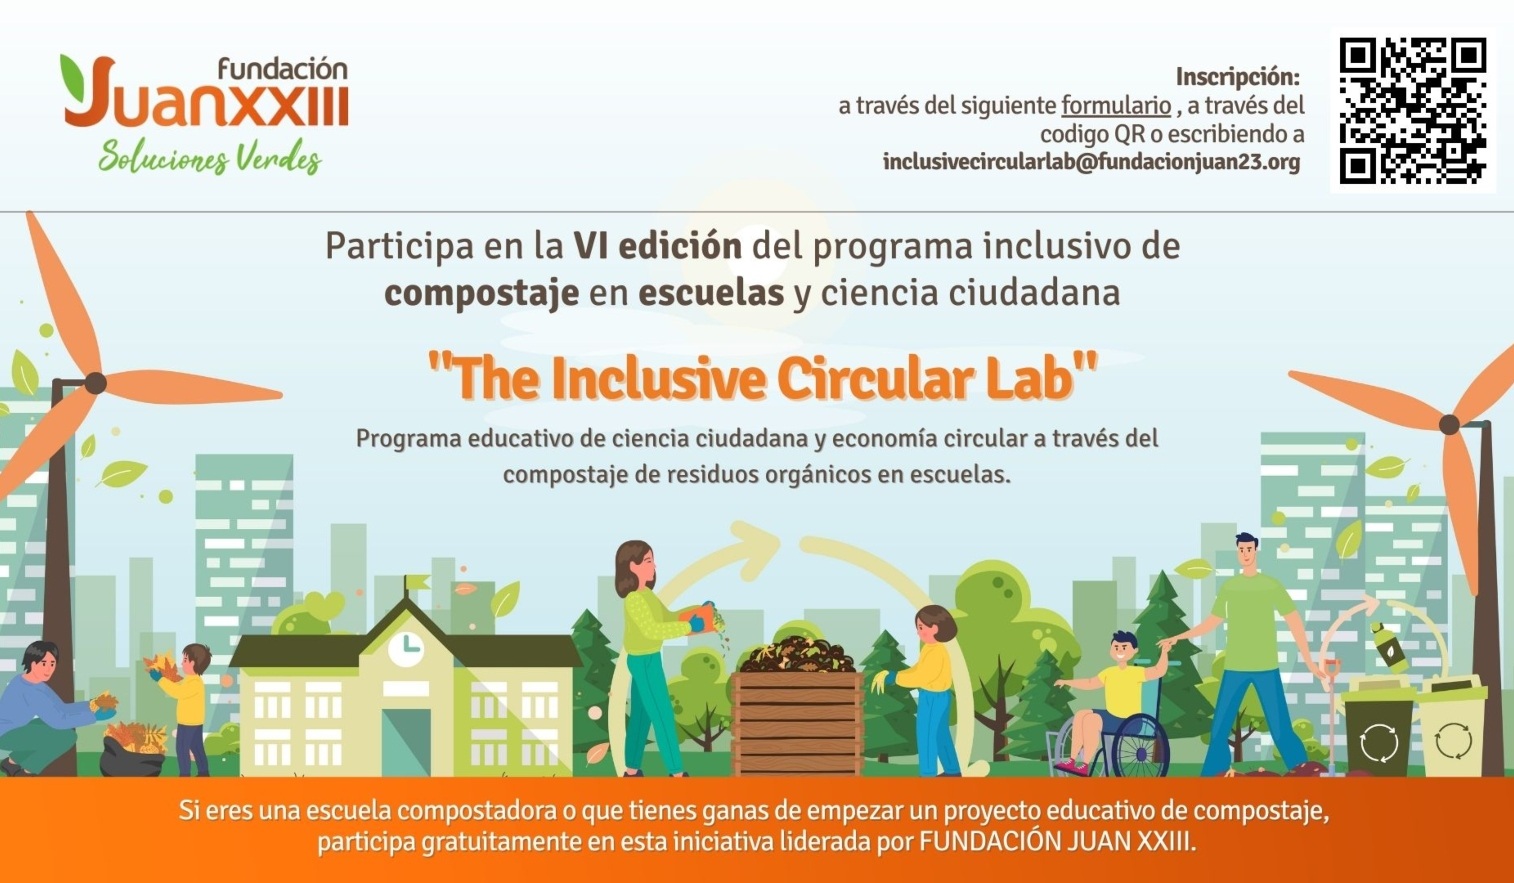 participa-en-la-vi-edicion-del-programa-inclusivo-de-ciencia-ciudadana-y-compostaje-en-escuelas-liderado-por-fundacion-juan-xxiii